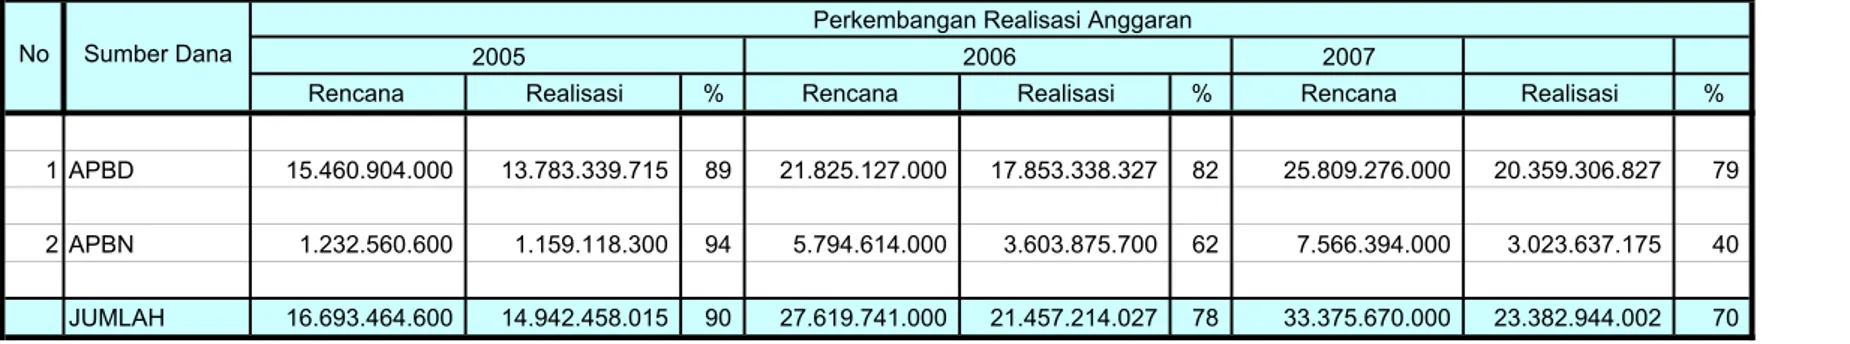 Tabel 1.11. Realisasi Anggaran Dinas Kehutanan Provinsi Papua s/d Tahun 2007